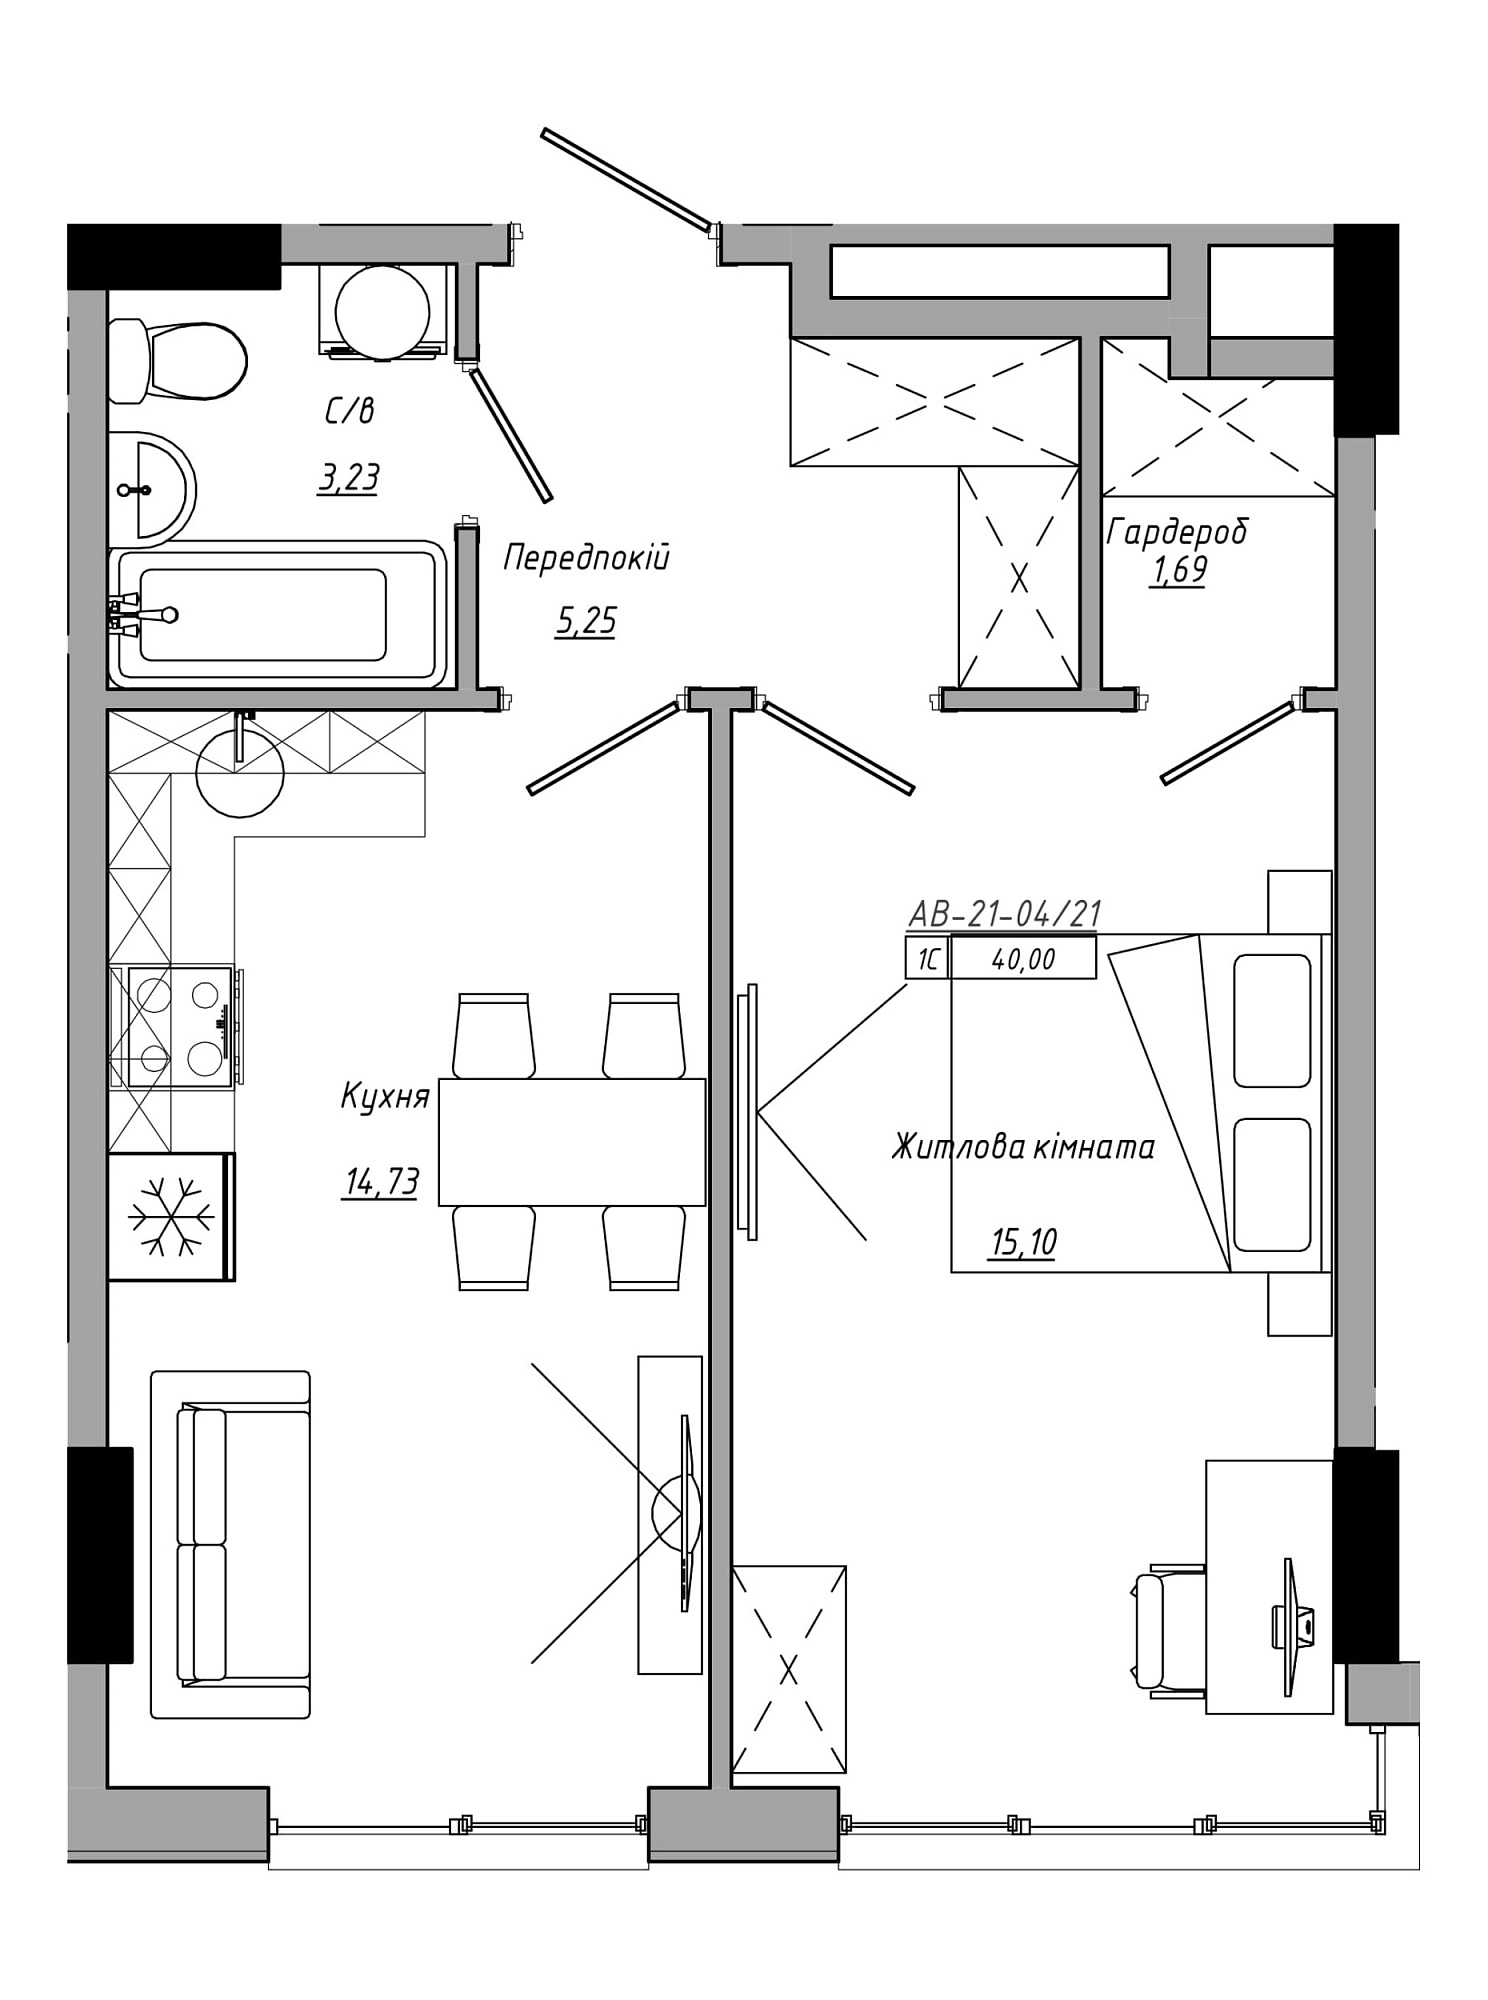 Планування 1-к квартира площею 40м2, AB-21-04/00021.